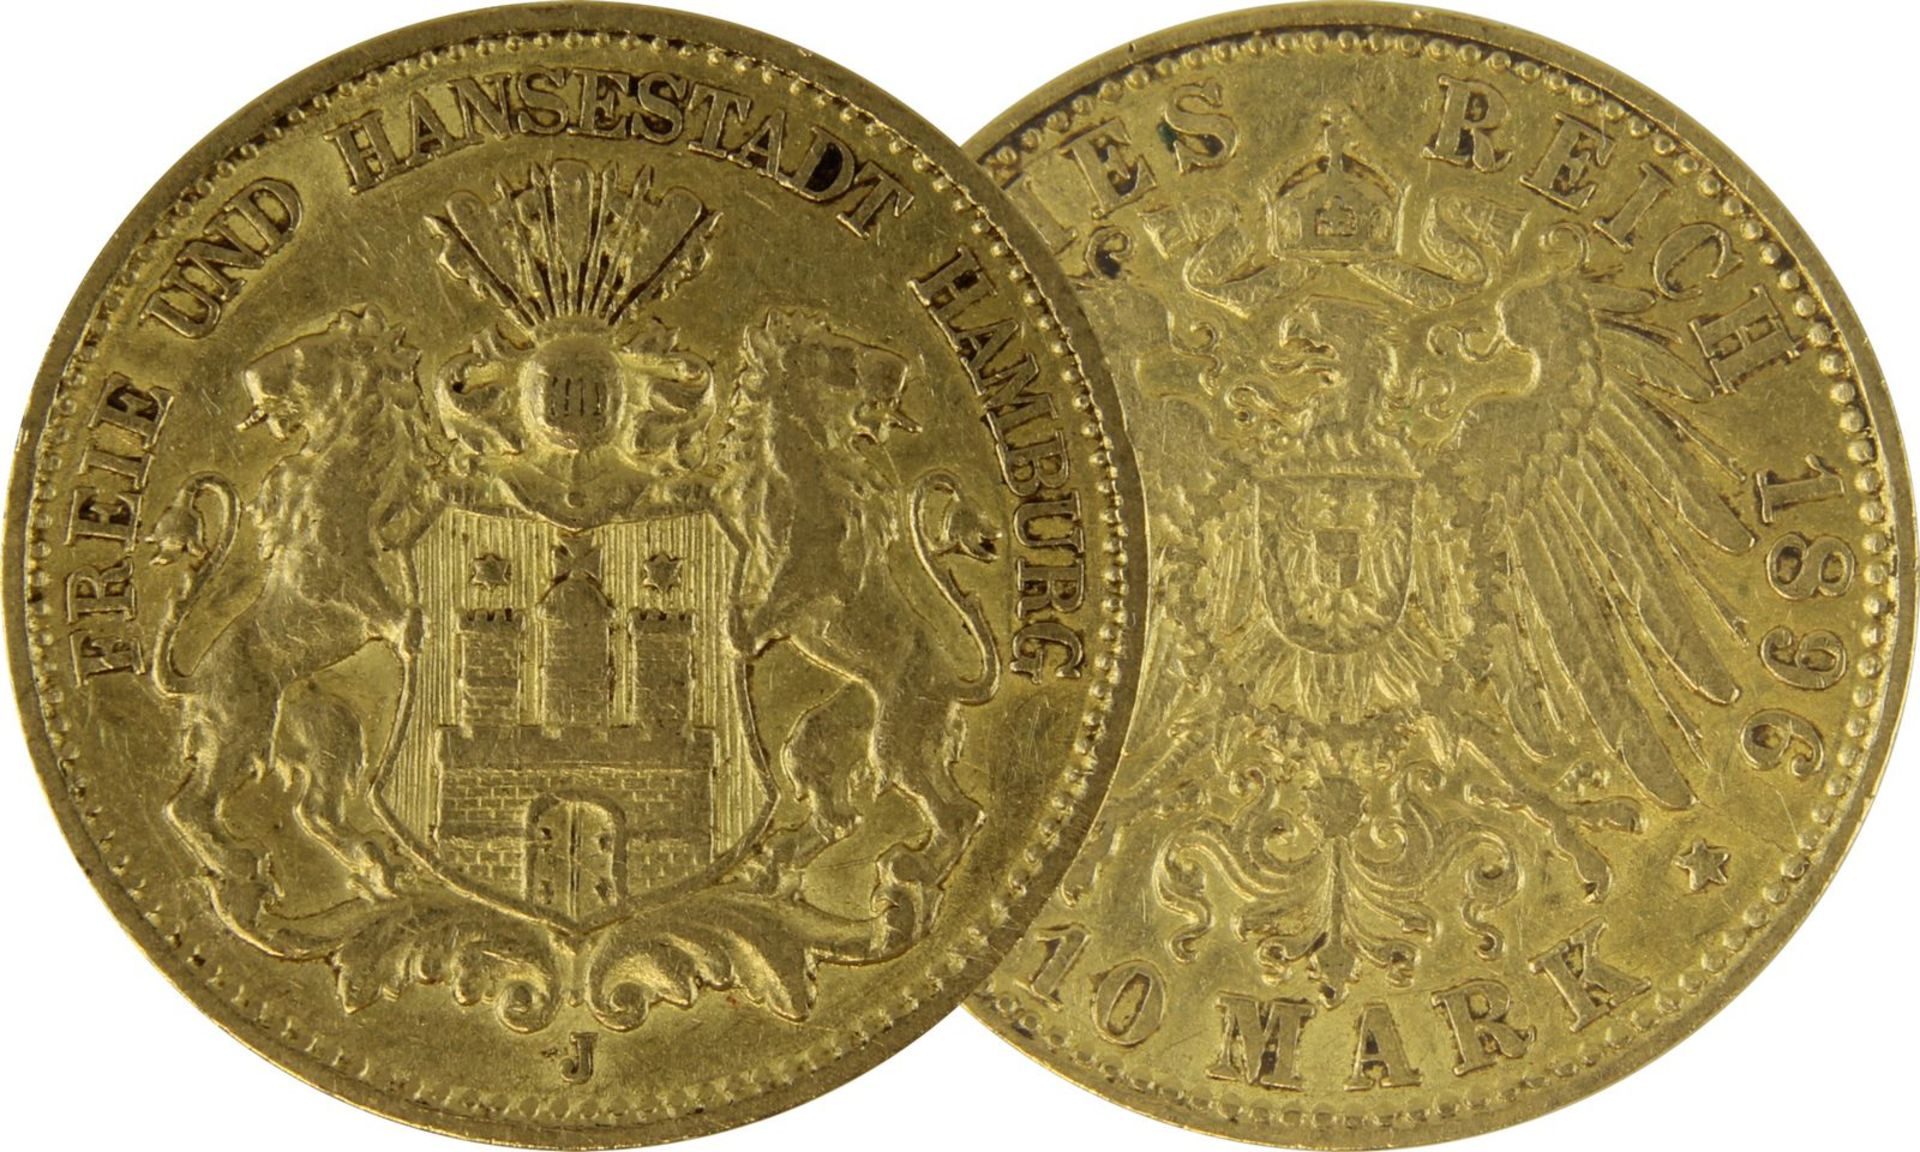 Goldmünze zu 10 Mark, Freie u. Hansestadt Hamburg - Deutsches Reich 1896, Avers: großes